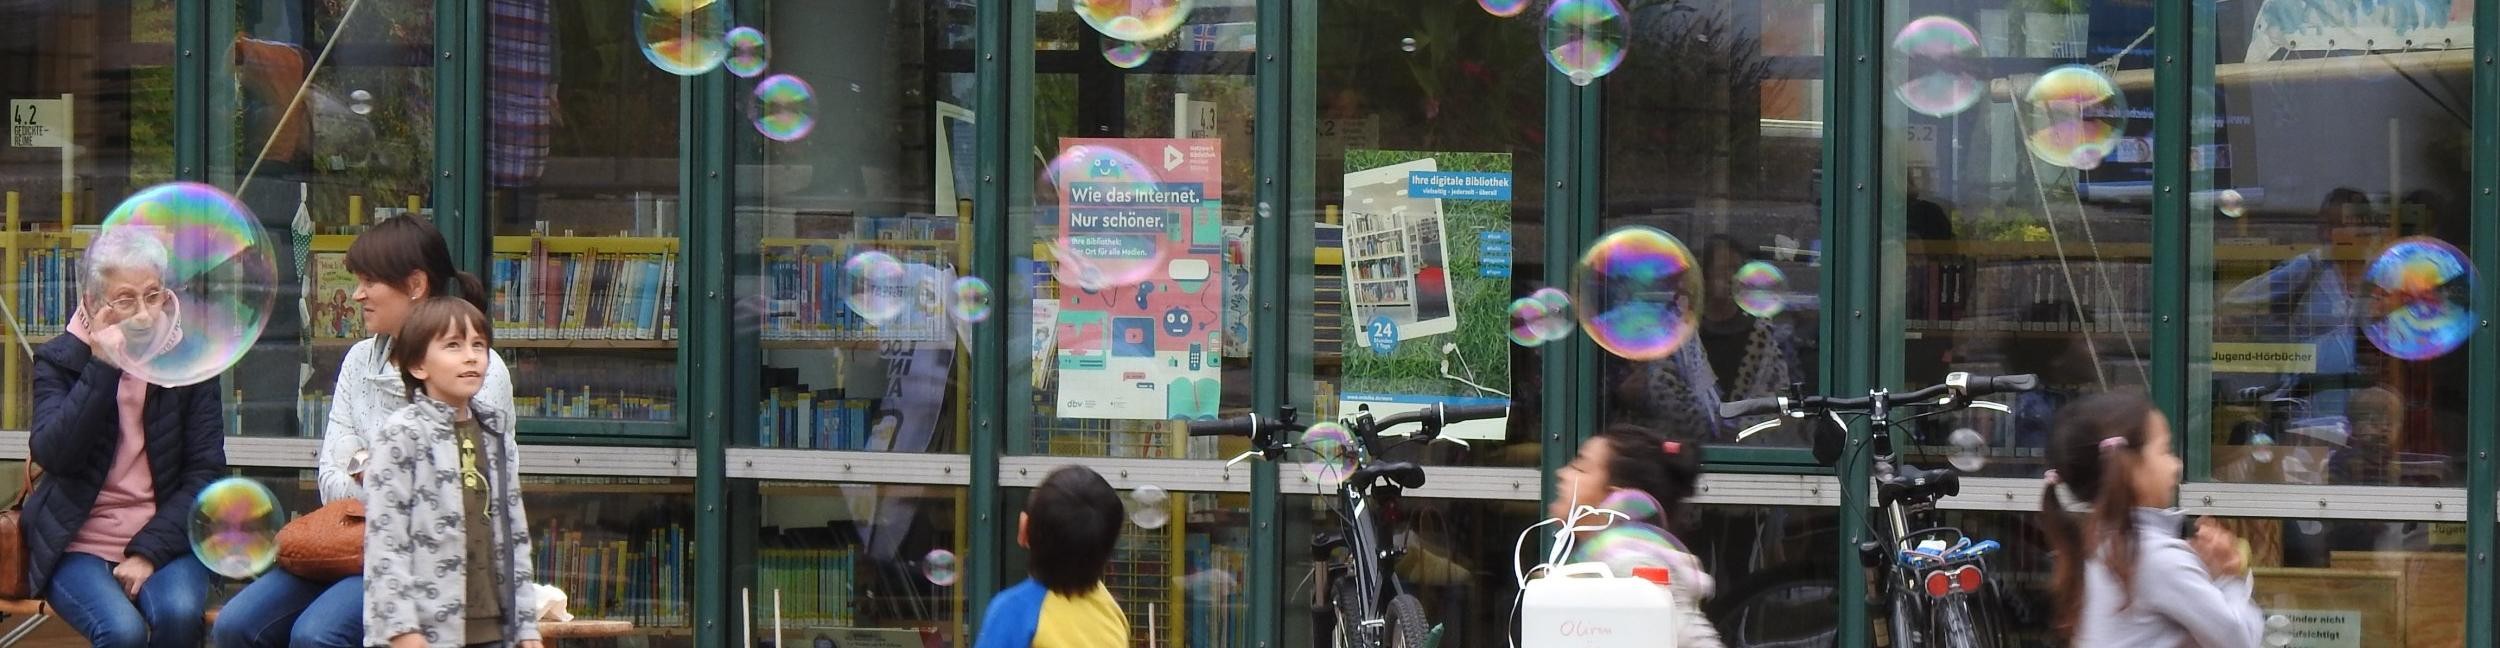 Enfants avec des bulles de savon devant la bibliothèque